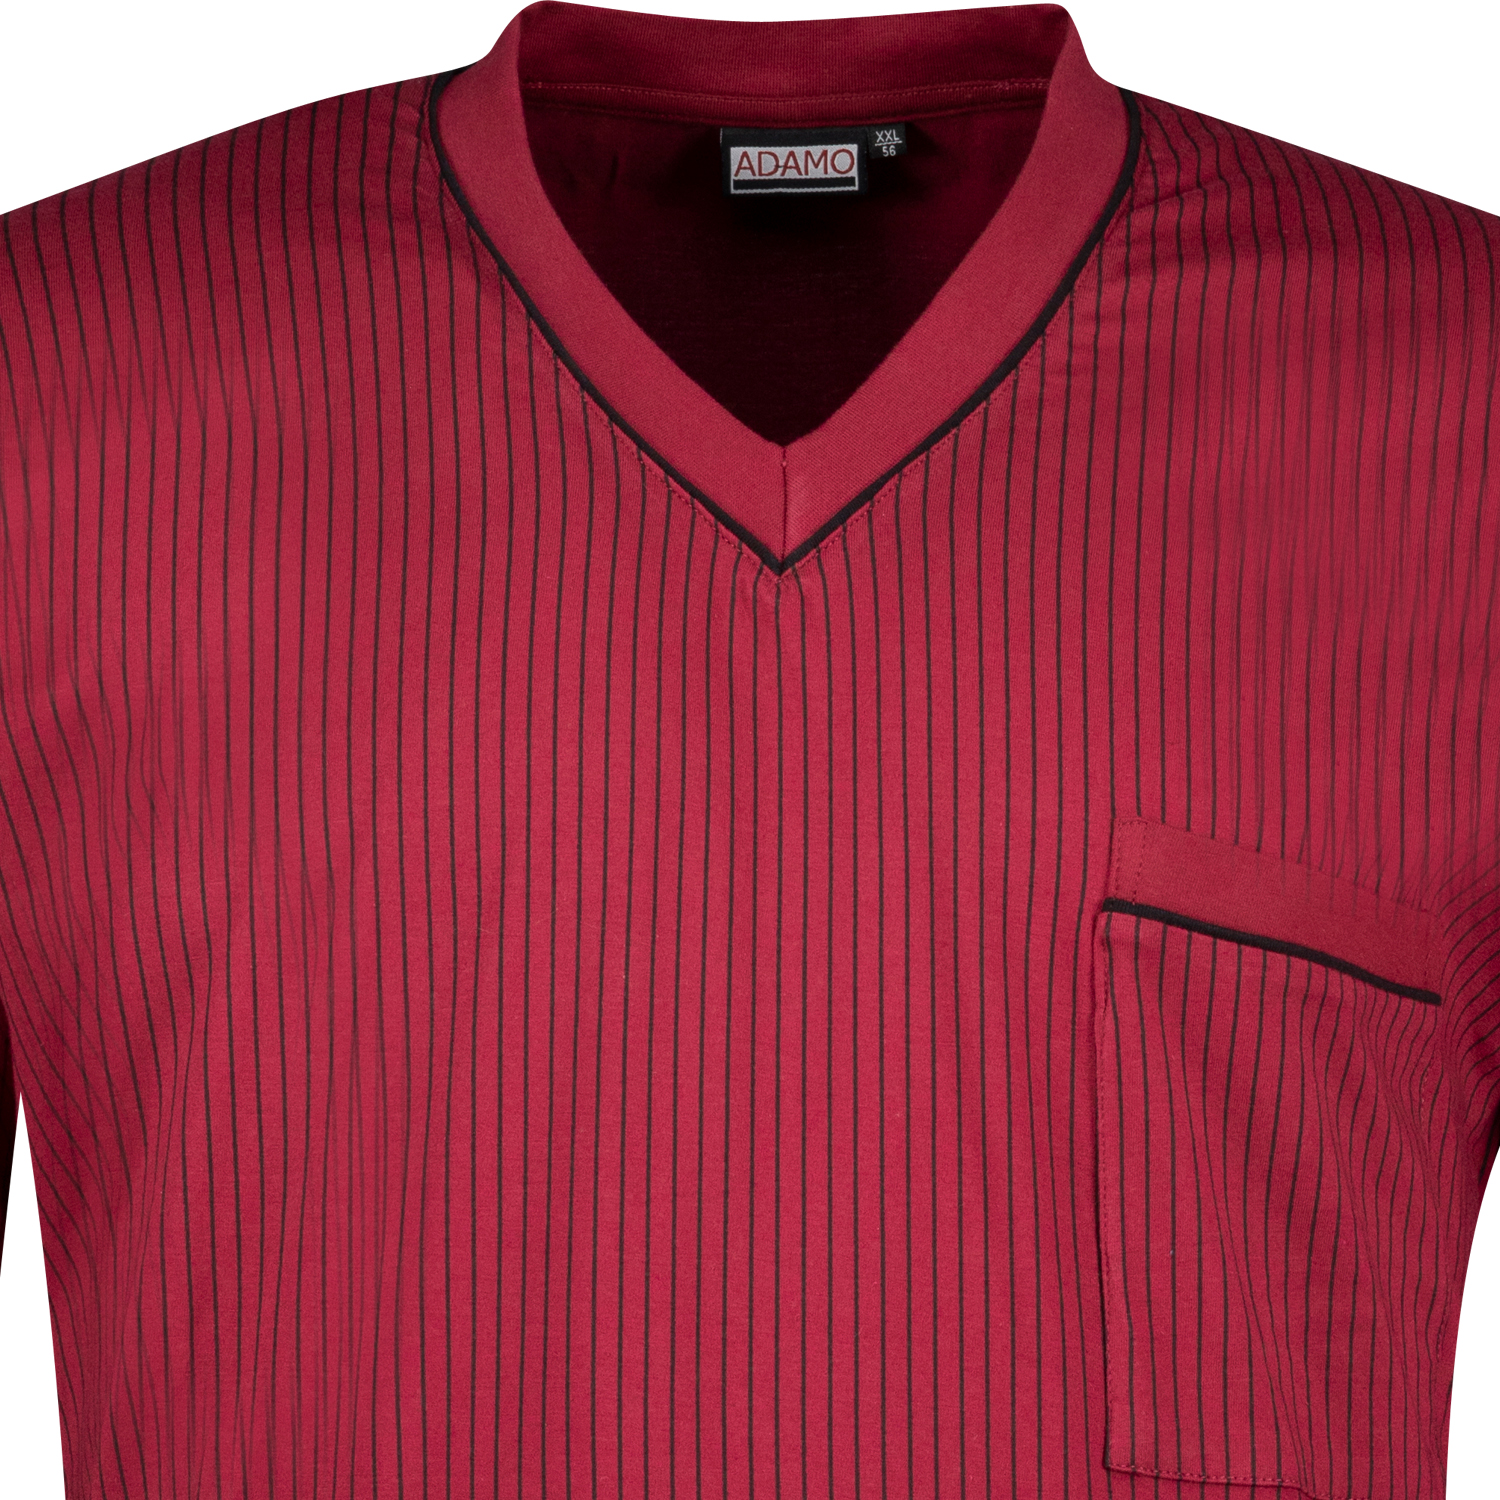 Adamo Langarm-Nachthemd in bordeaux mit schwarzen Streifen bis Übergröße 10XL